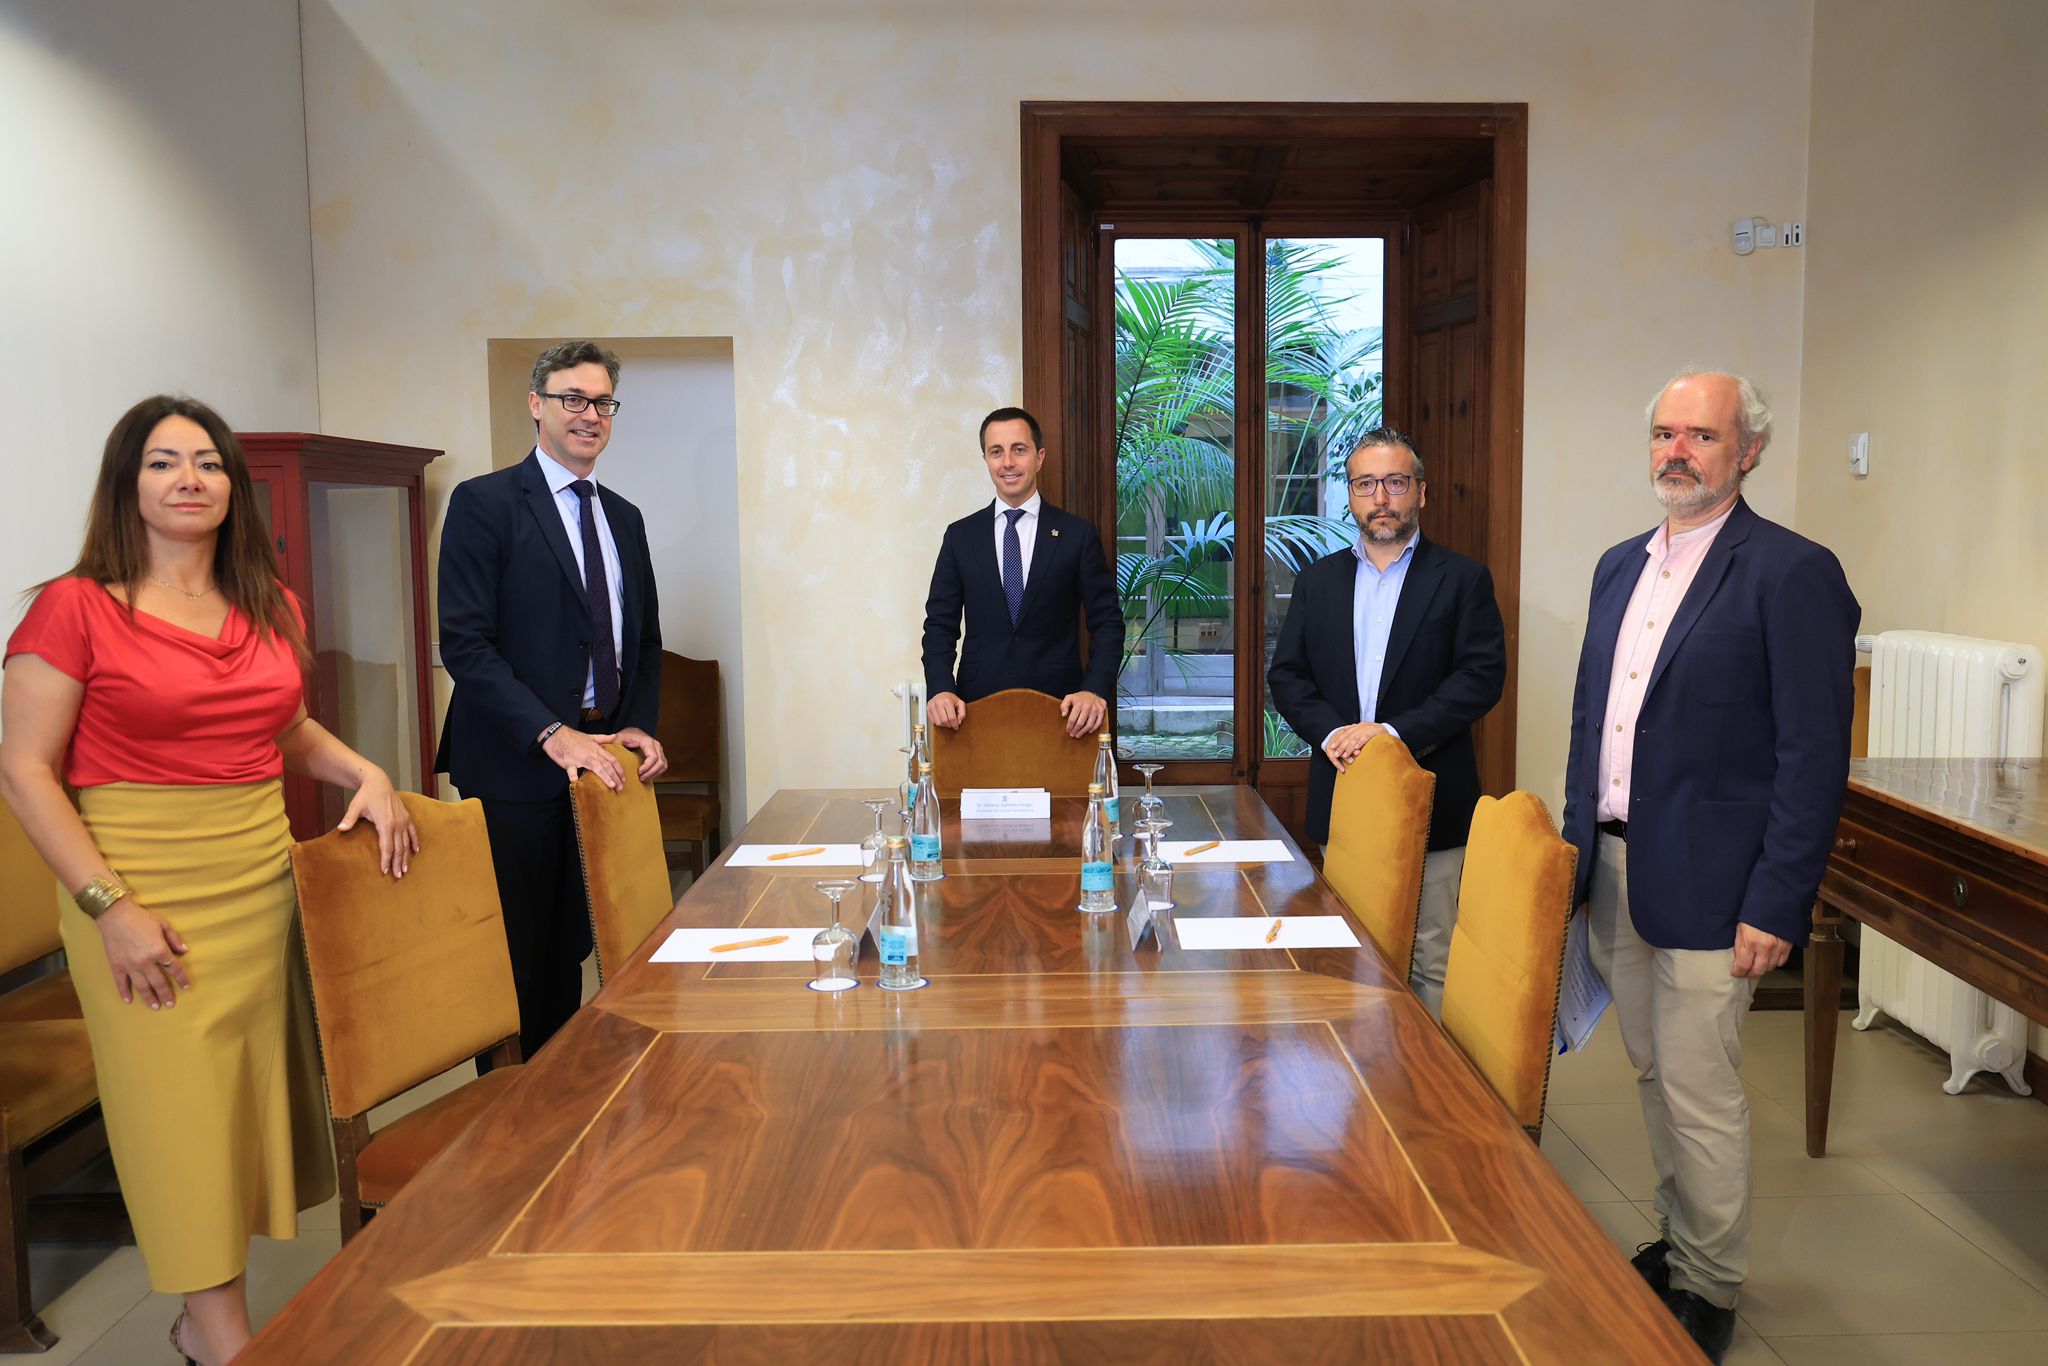 Reunió entre el president del Consell de Mallorca, Llorenç Galmés, i el vicepresident i conseller d’Hisenda del Govern de les Illes Balears, Antoni Costa.